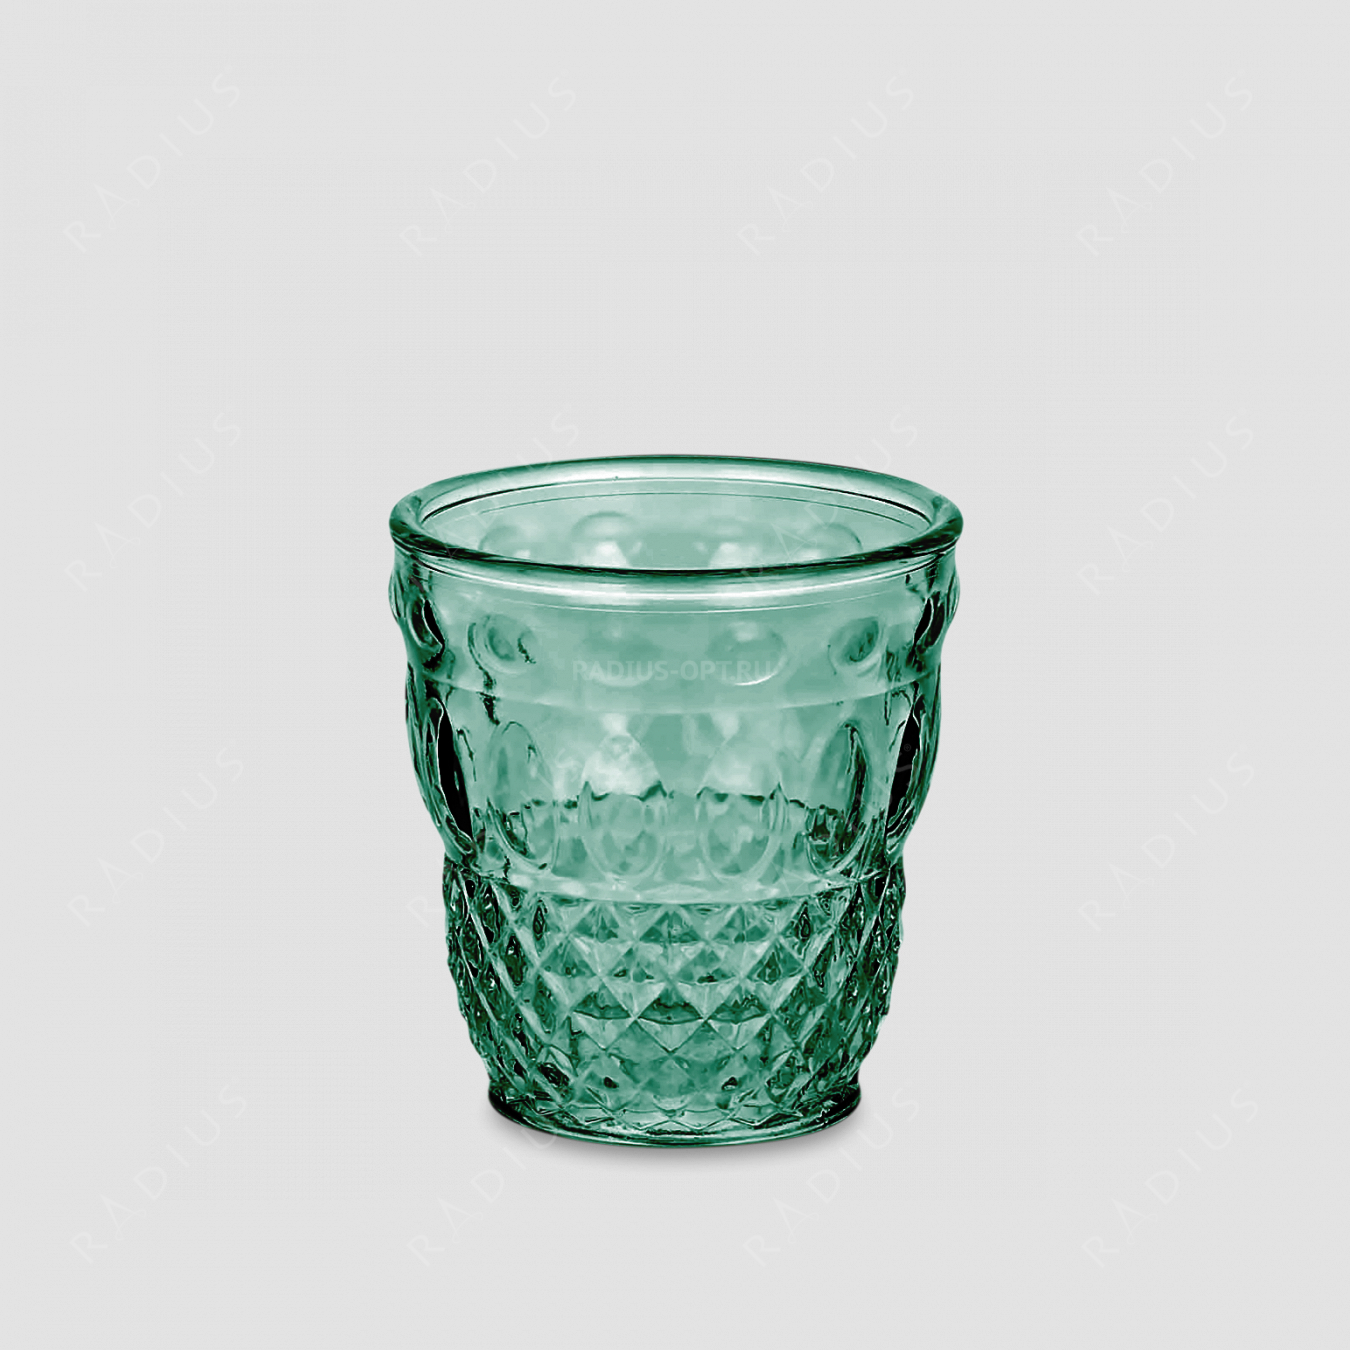 Стакан для напитков, объем: 280 мл, диаметр: 8,6 см, высота: 9,1 см, материал: стекло, цвет: сине-зеленый, серия Ser Lapo, IVV (Italy), Италия